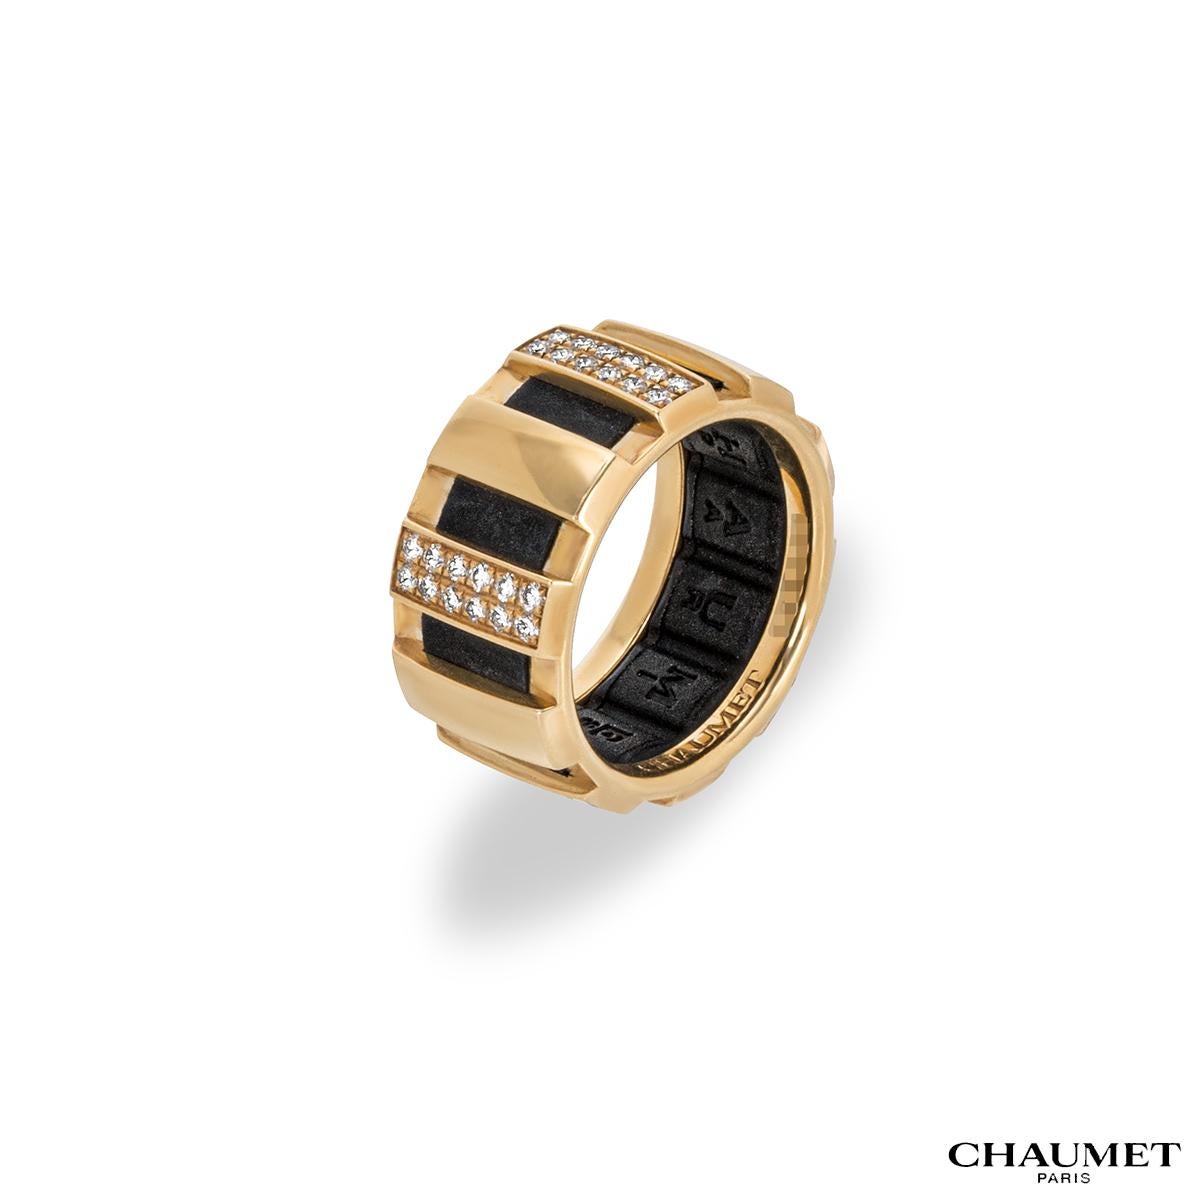 Ein Diamantring aus 18 Karat Gelbgold von Chaumet aus der Class one Kollektion. Der Ring besteht aus runden Diamanten im Brillantschliff in einer Pflasterfassung auf jedem rechteckigen Segment und einem Gummiband auf der Innenseite des Rings.